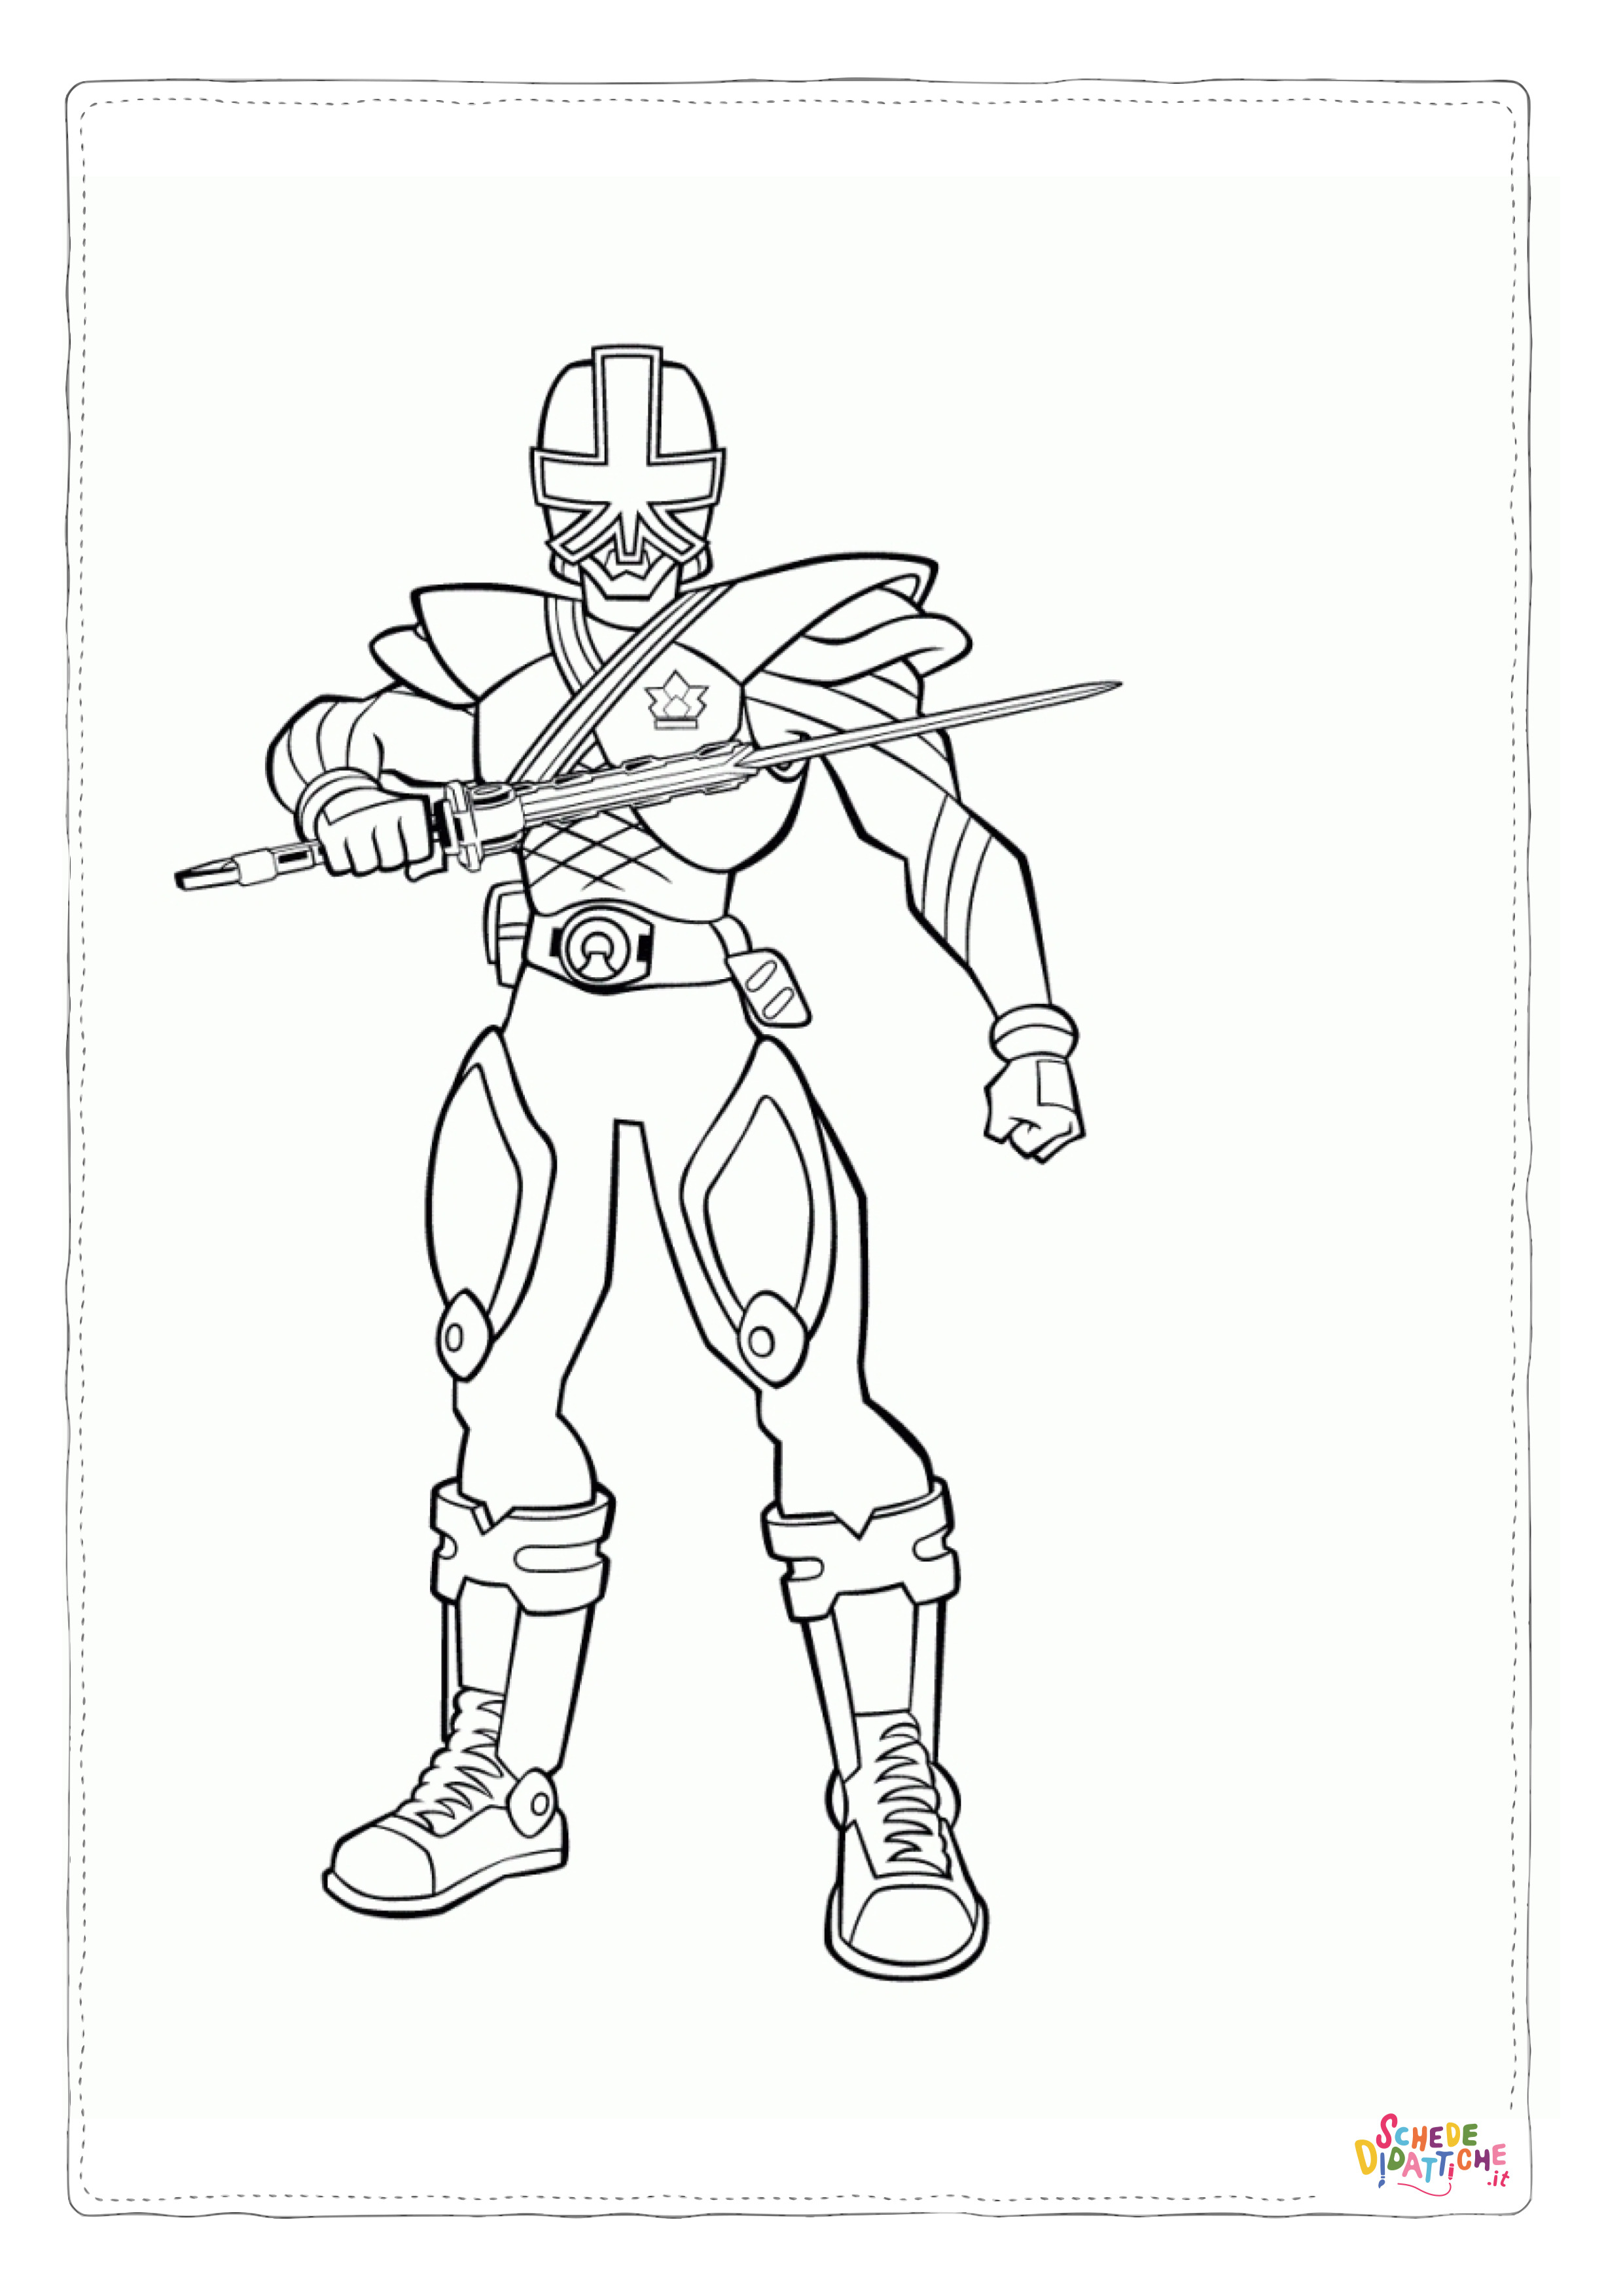 Disegno di Power Rangers da stampare e colorare 17